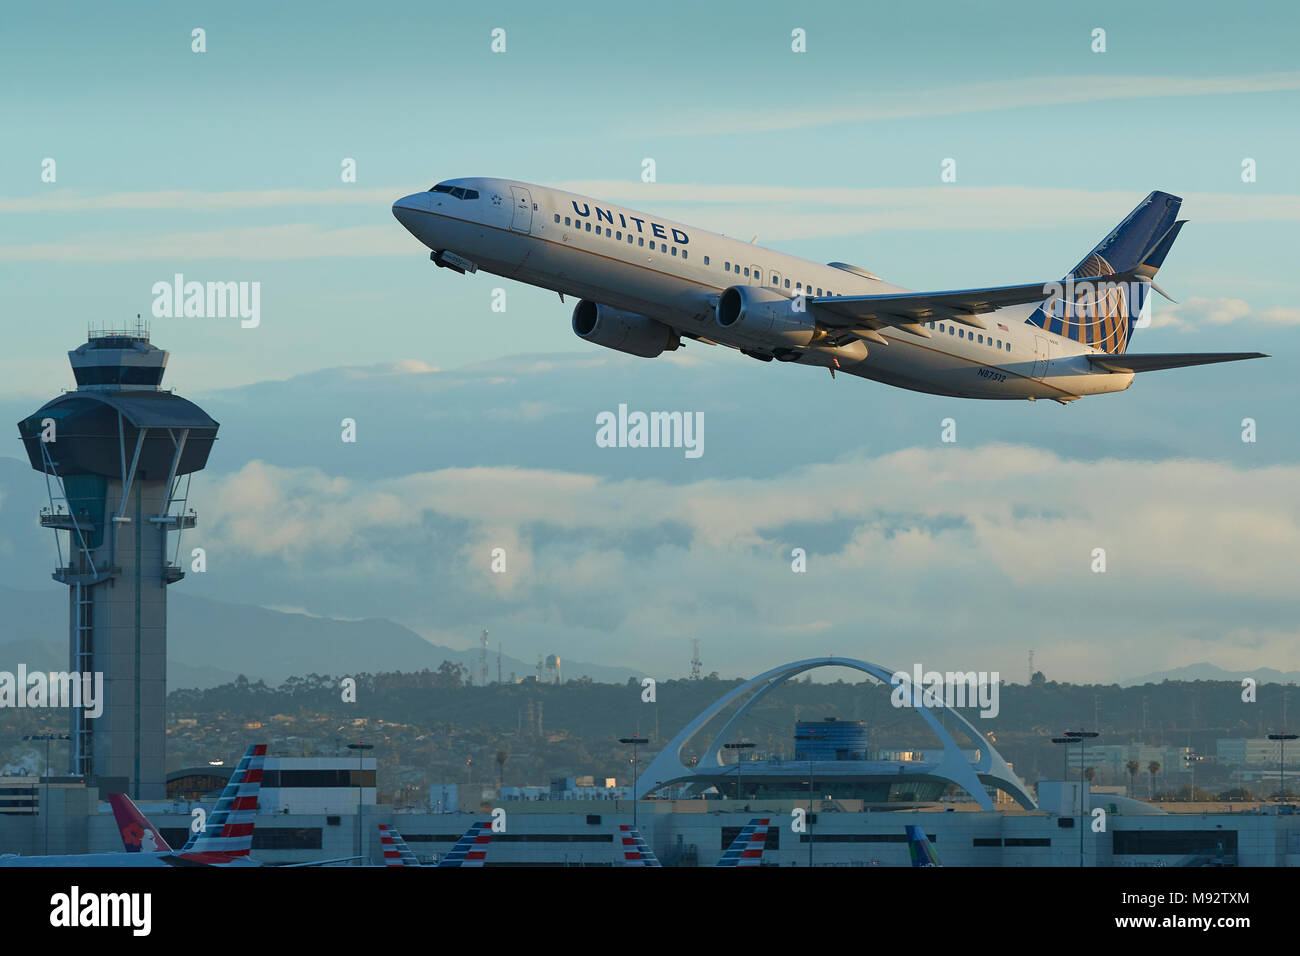 United Airlines Boeing 737-900 Avion de ligne au décollage de l'Aéroport International de Los Angeles, LAX. Le thème Bâtir une tour de contrôle derrière. Banque D'Images